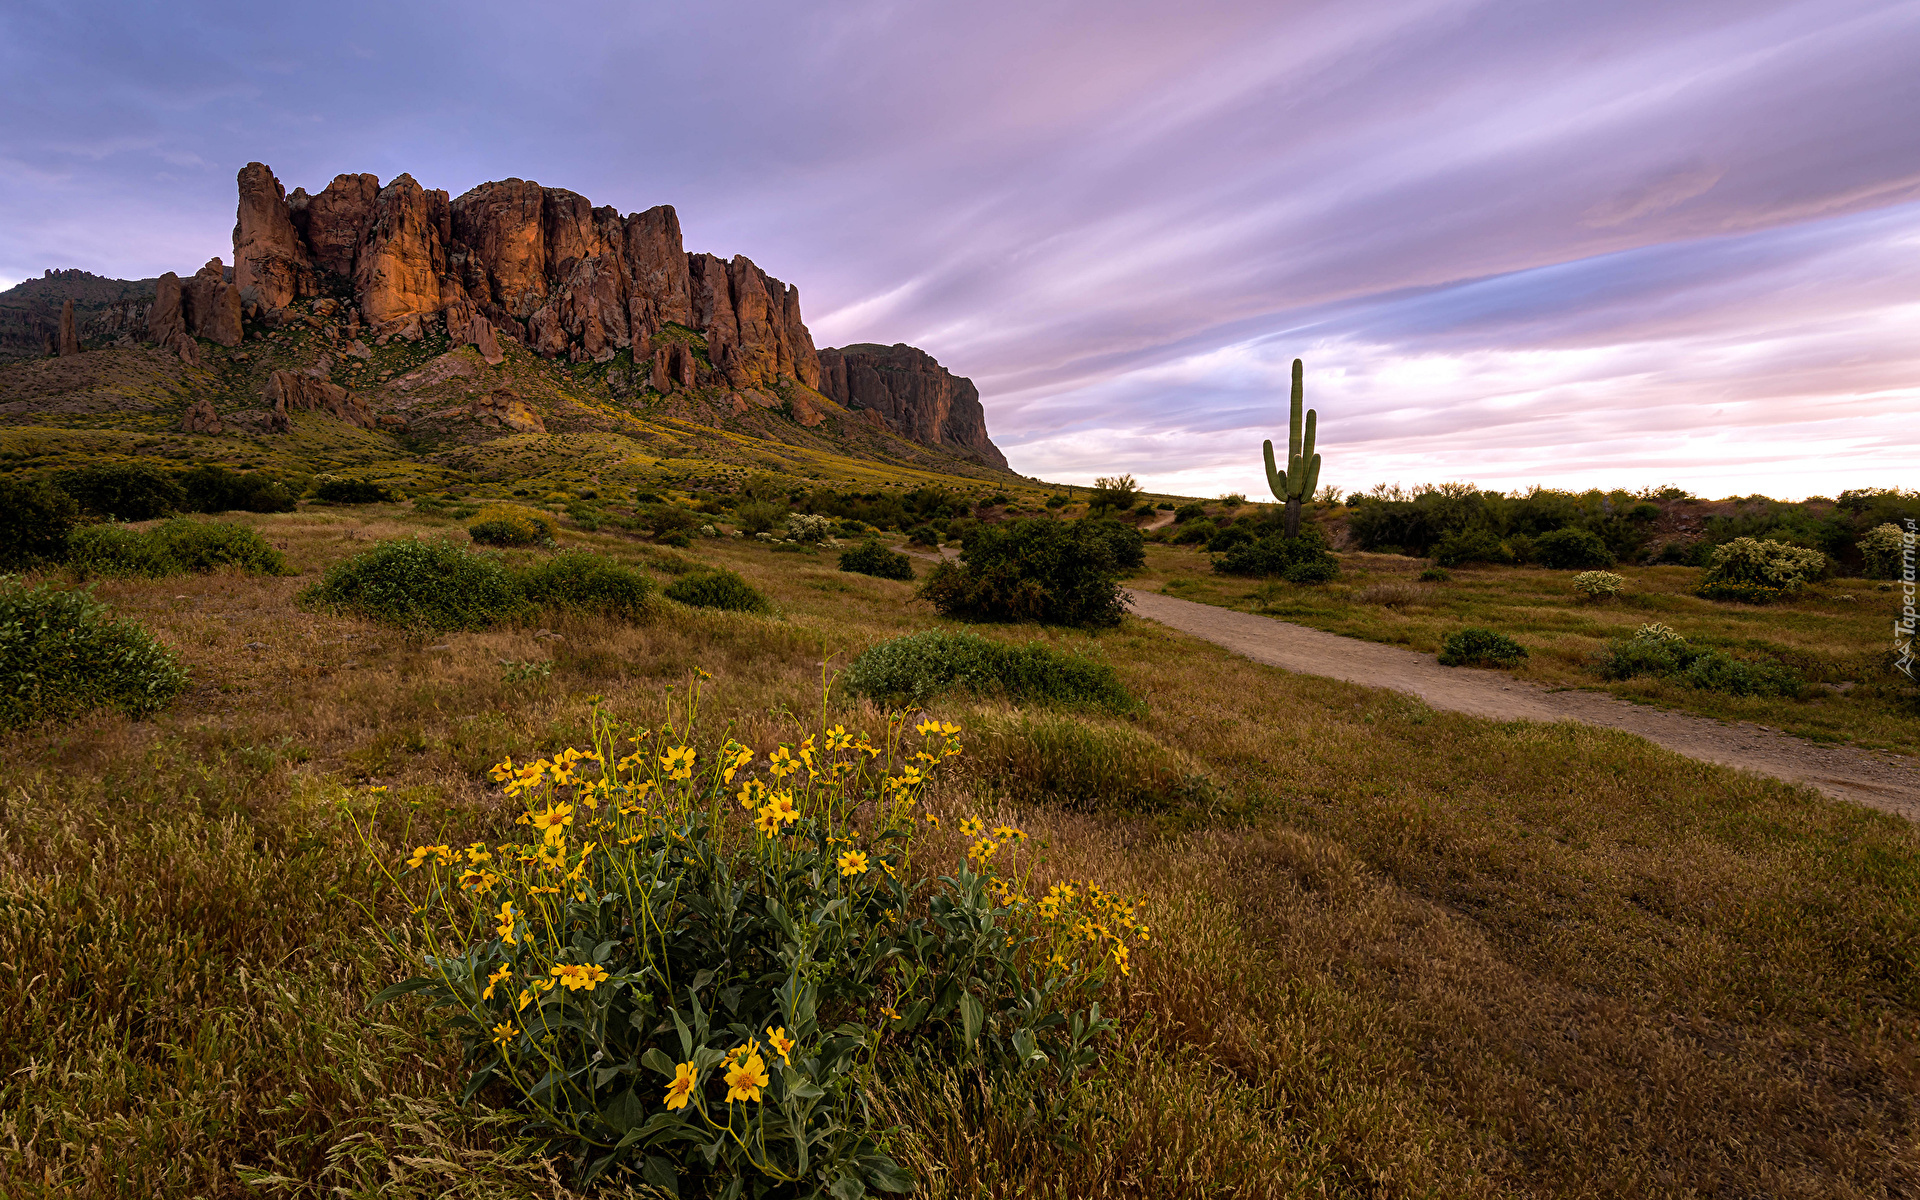 Stany Zjednoczone, Stan Arizona, Góry, Superstition Mountains, Skały, Droga, Trawa, Kwiaty, Kaktus